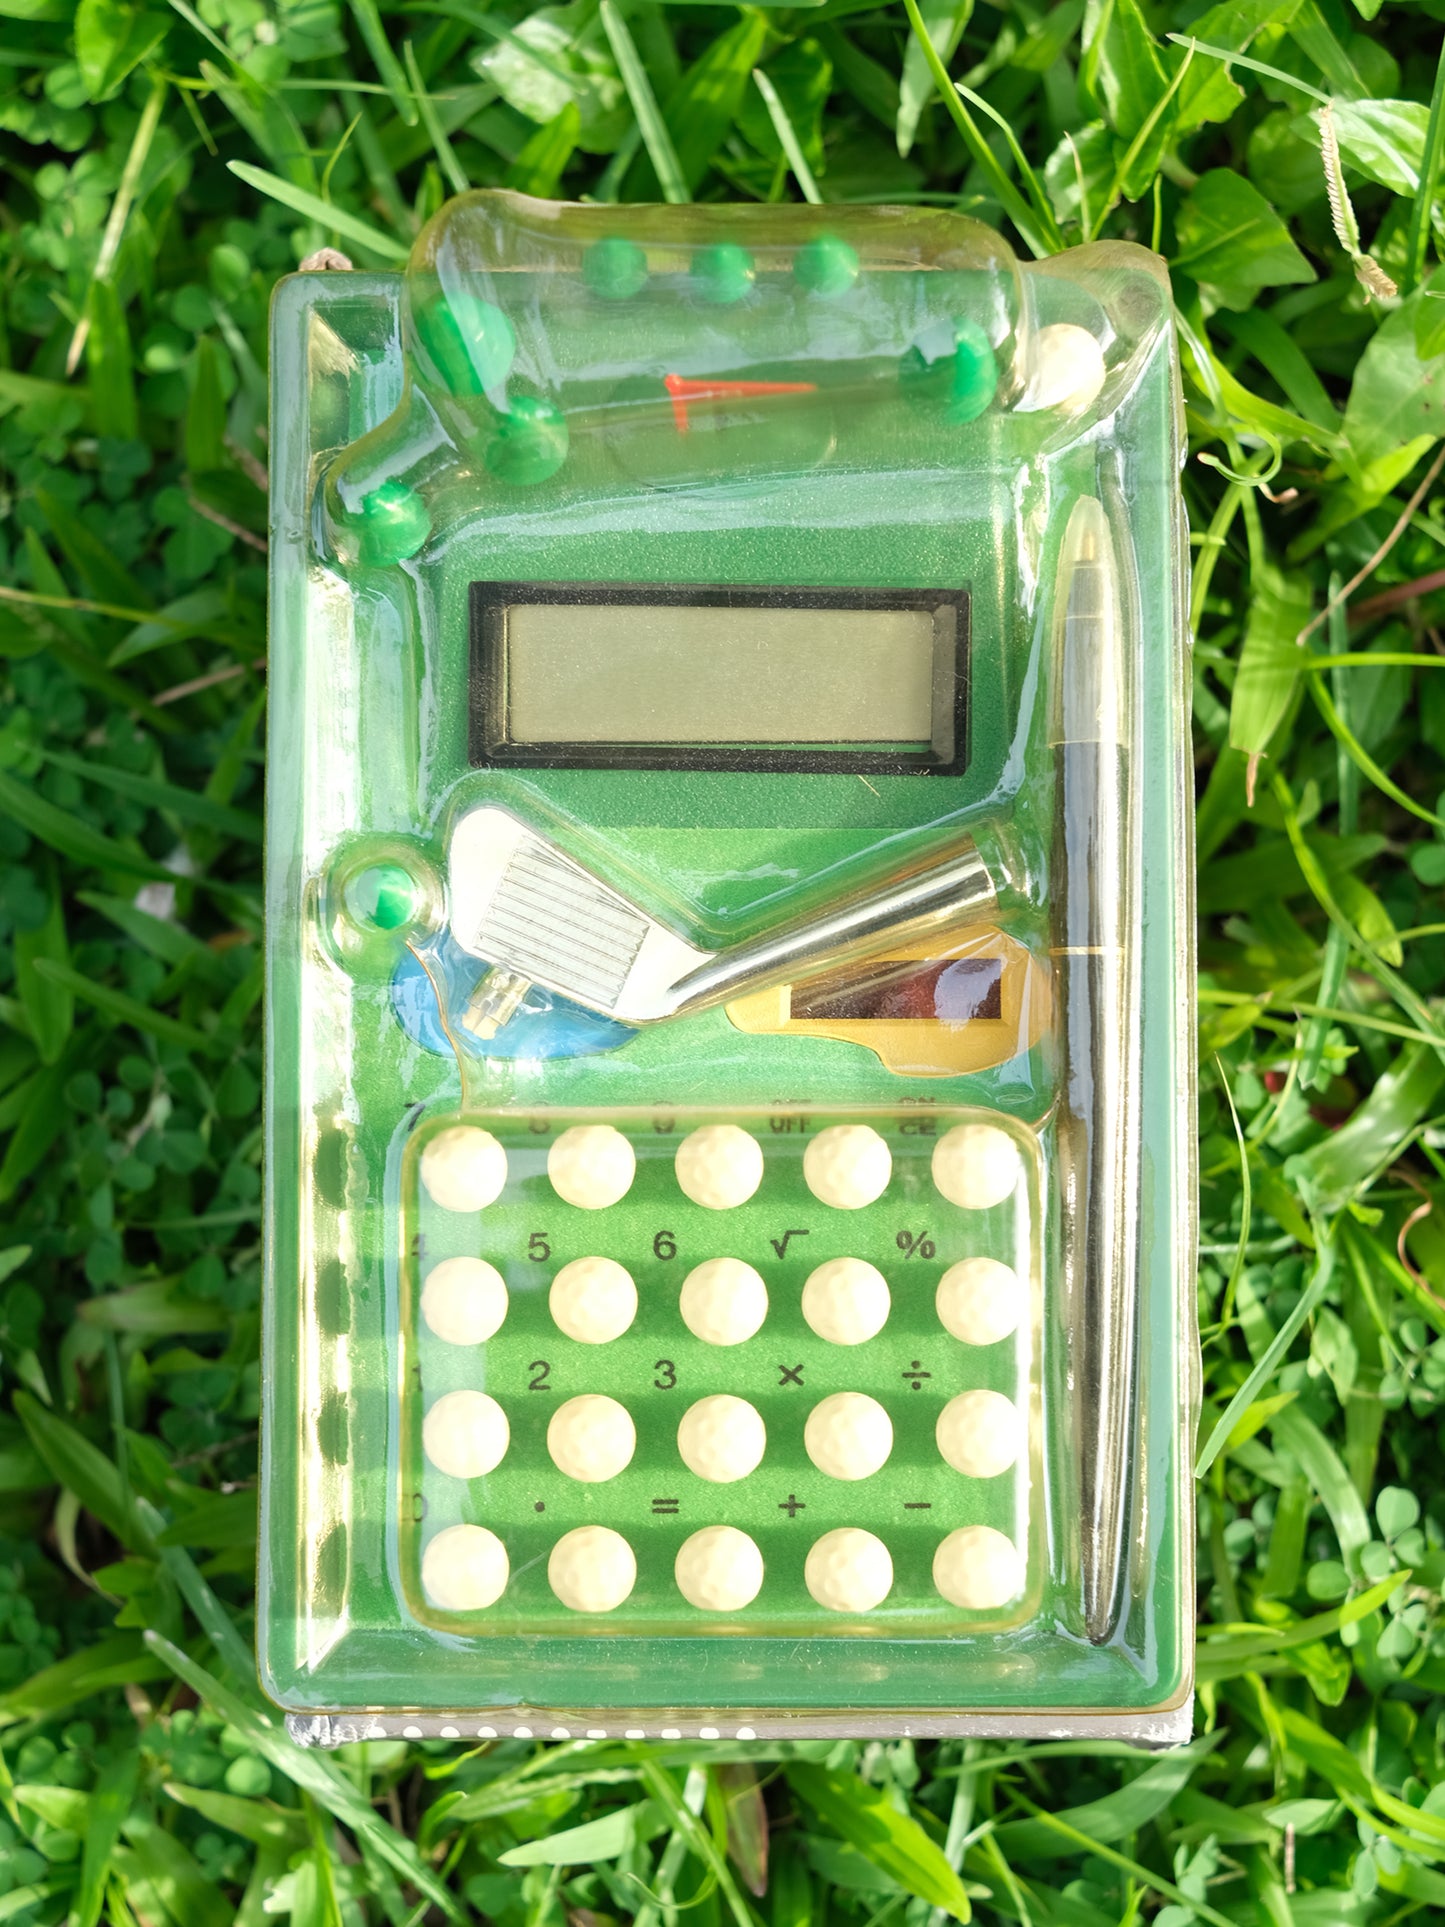 台灣制 Golf 高爾夫球場型 計數機 電卓 Golf Calculator